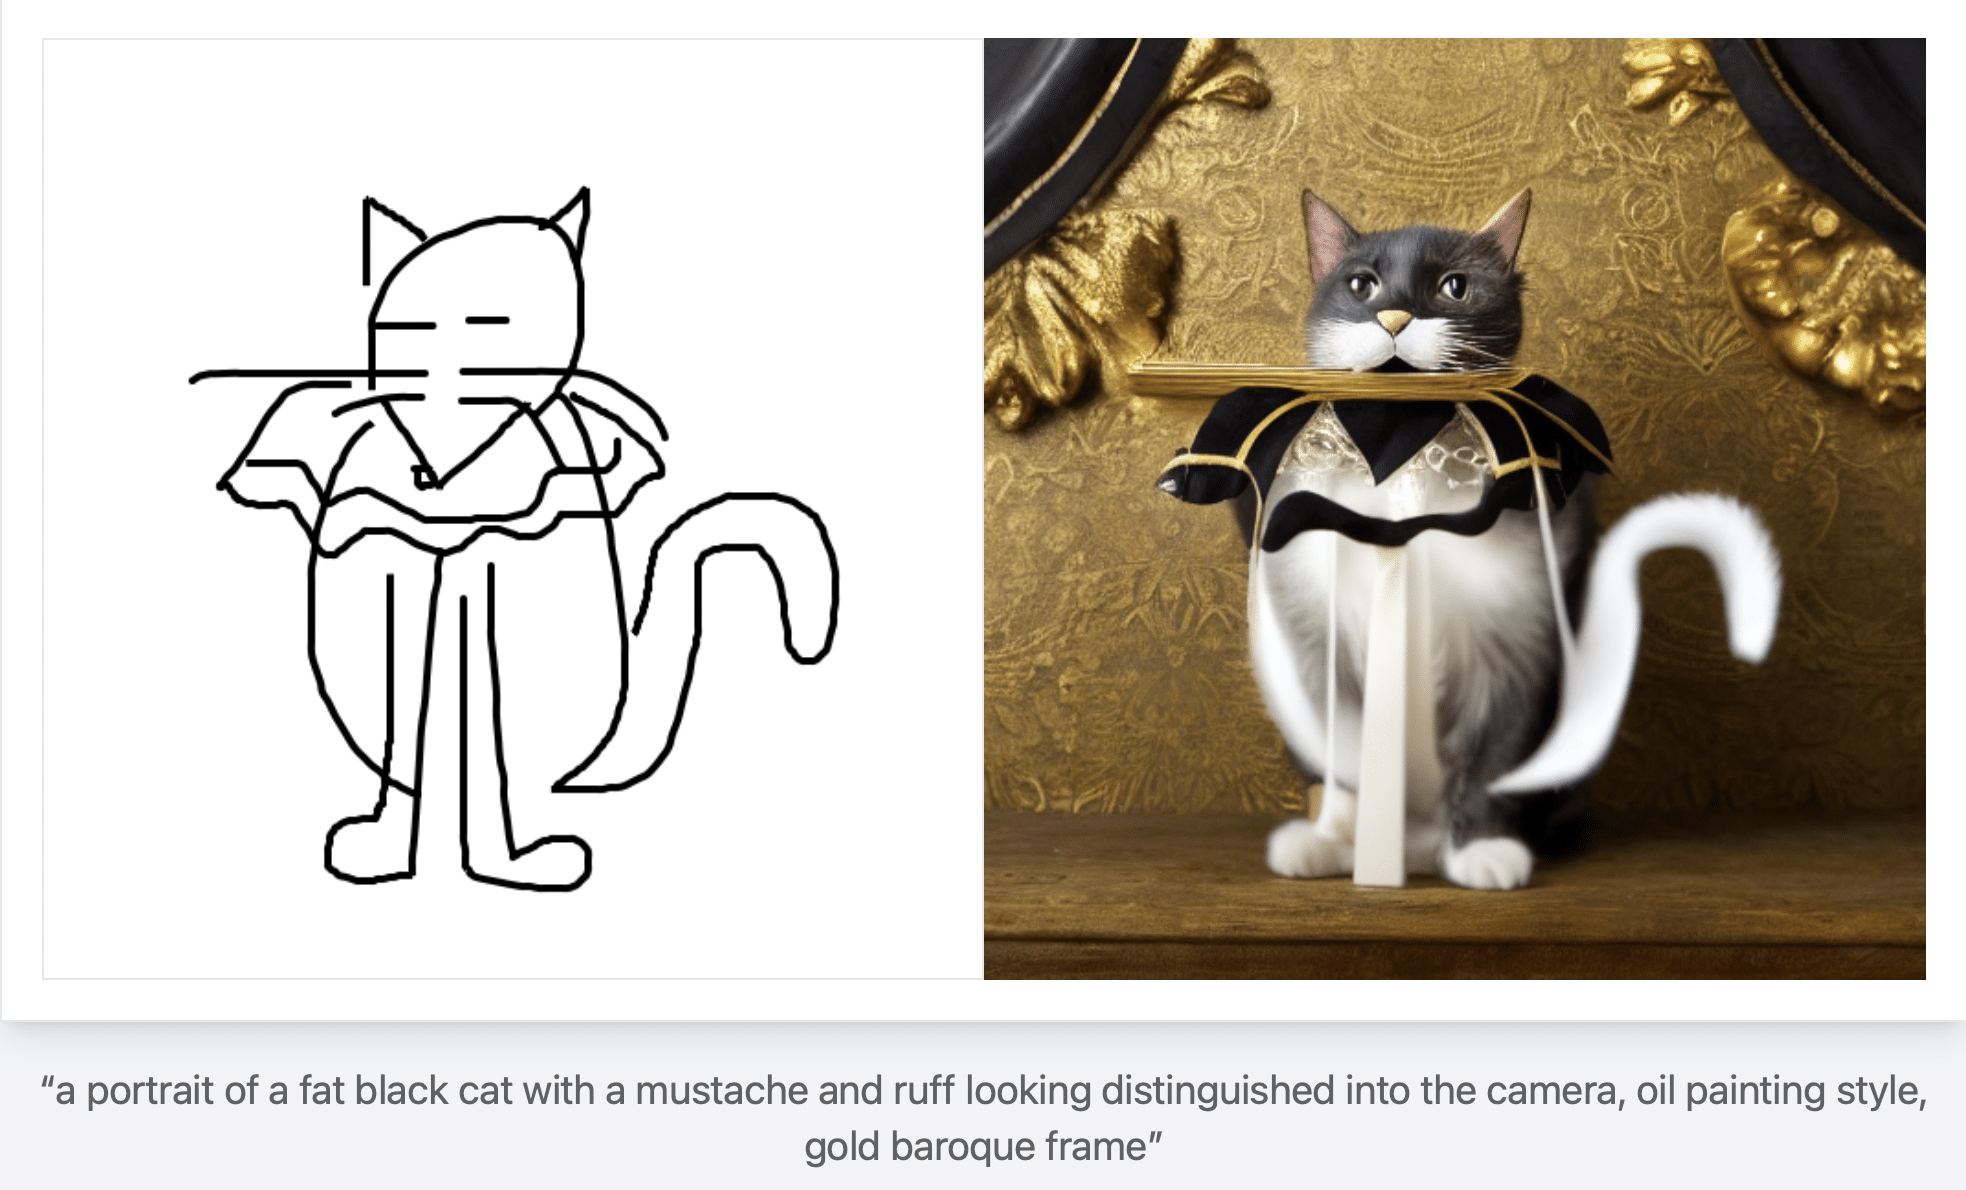 Eine Skizze von einer Katze mit Halskrause und ein digitales Gemälde von derselben Katze in färbe und vor goldenem Hintergrund rechts